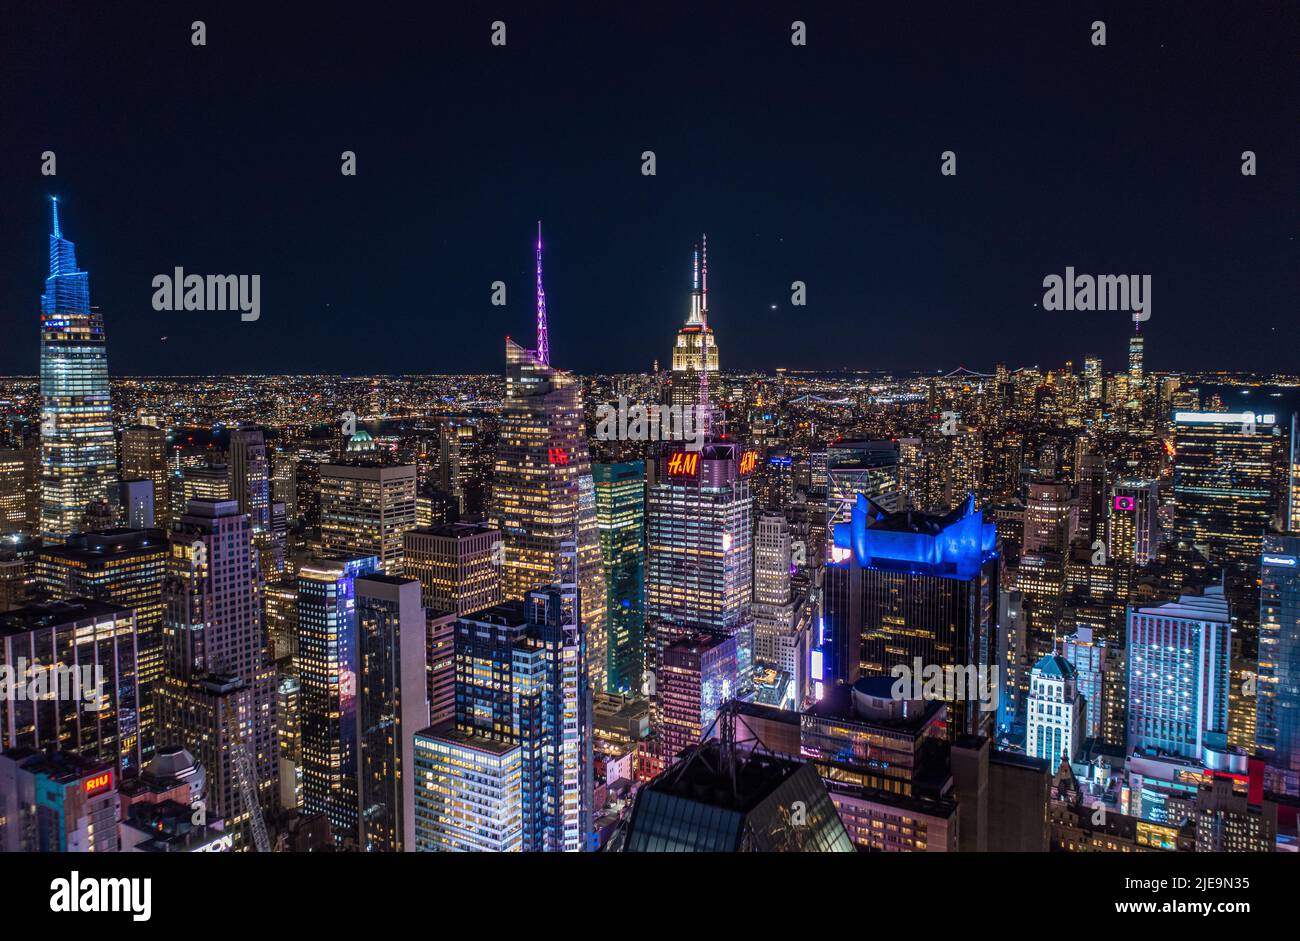 Nächtliche Stadtszene mit hohen Wolkenkratzern in der Innenstadt in der Metropole. Hohe Gebäude mit farbigen beleuchteten Türmen auf den Gipfeln. Manhattan, New York City, USA Stockfoto